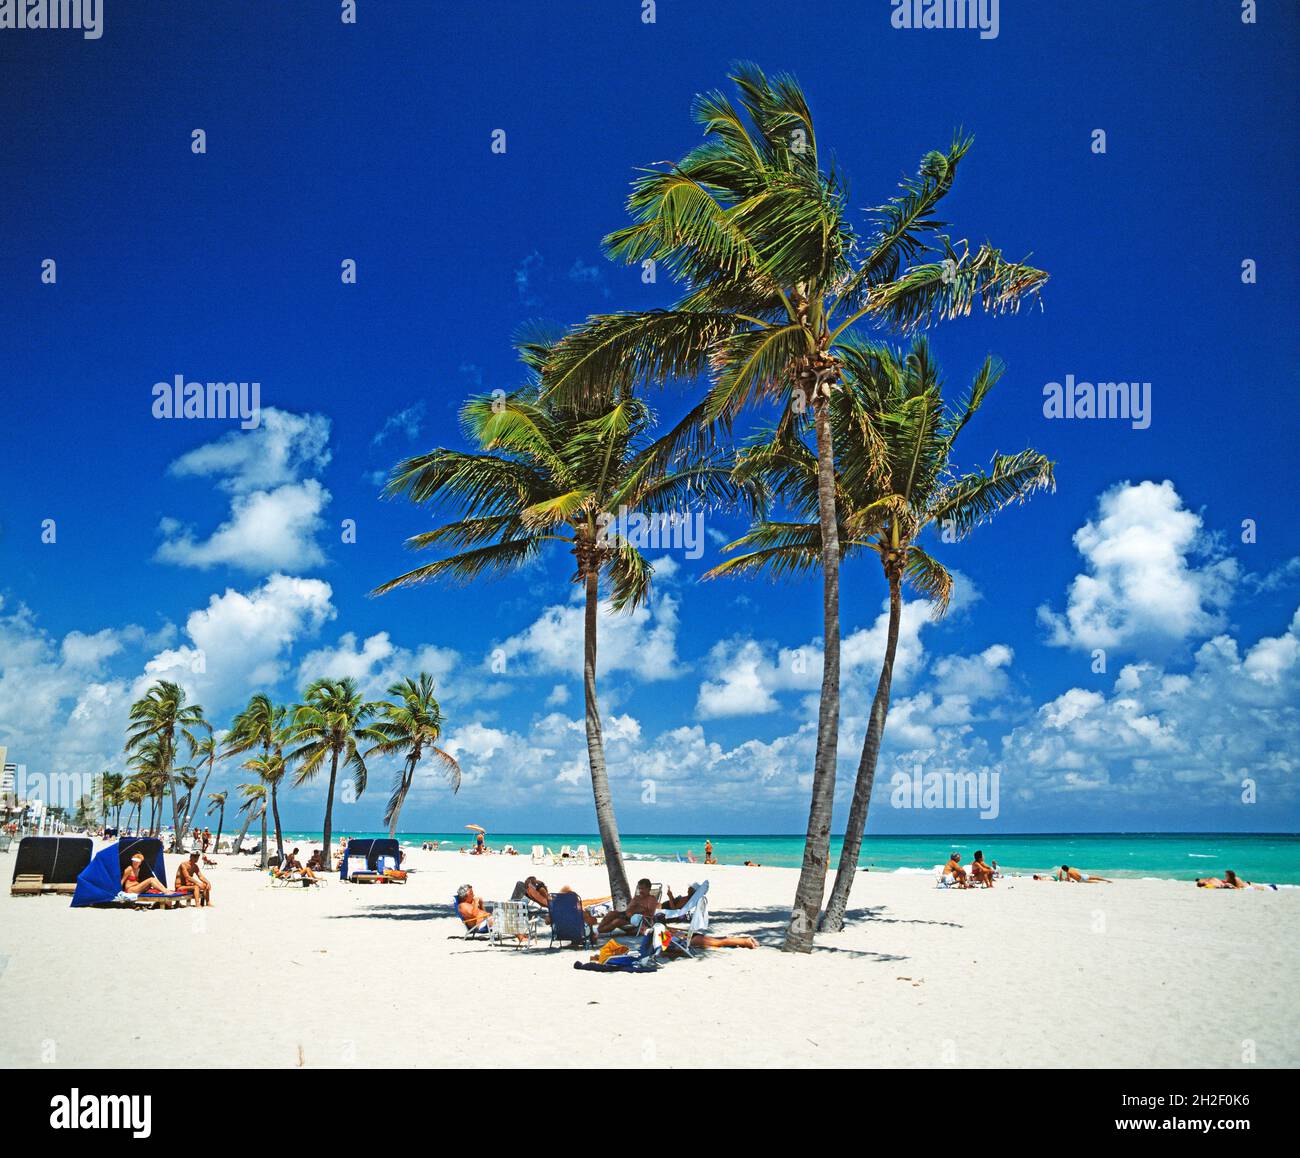 United States. Florida. Miami. Hollywood Beach. Stock Photo